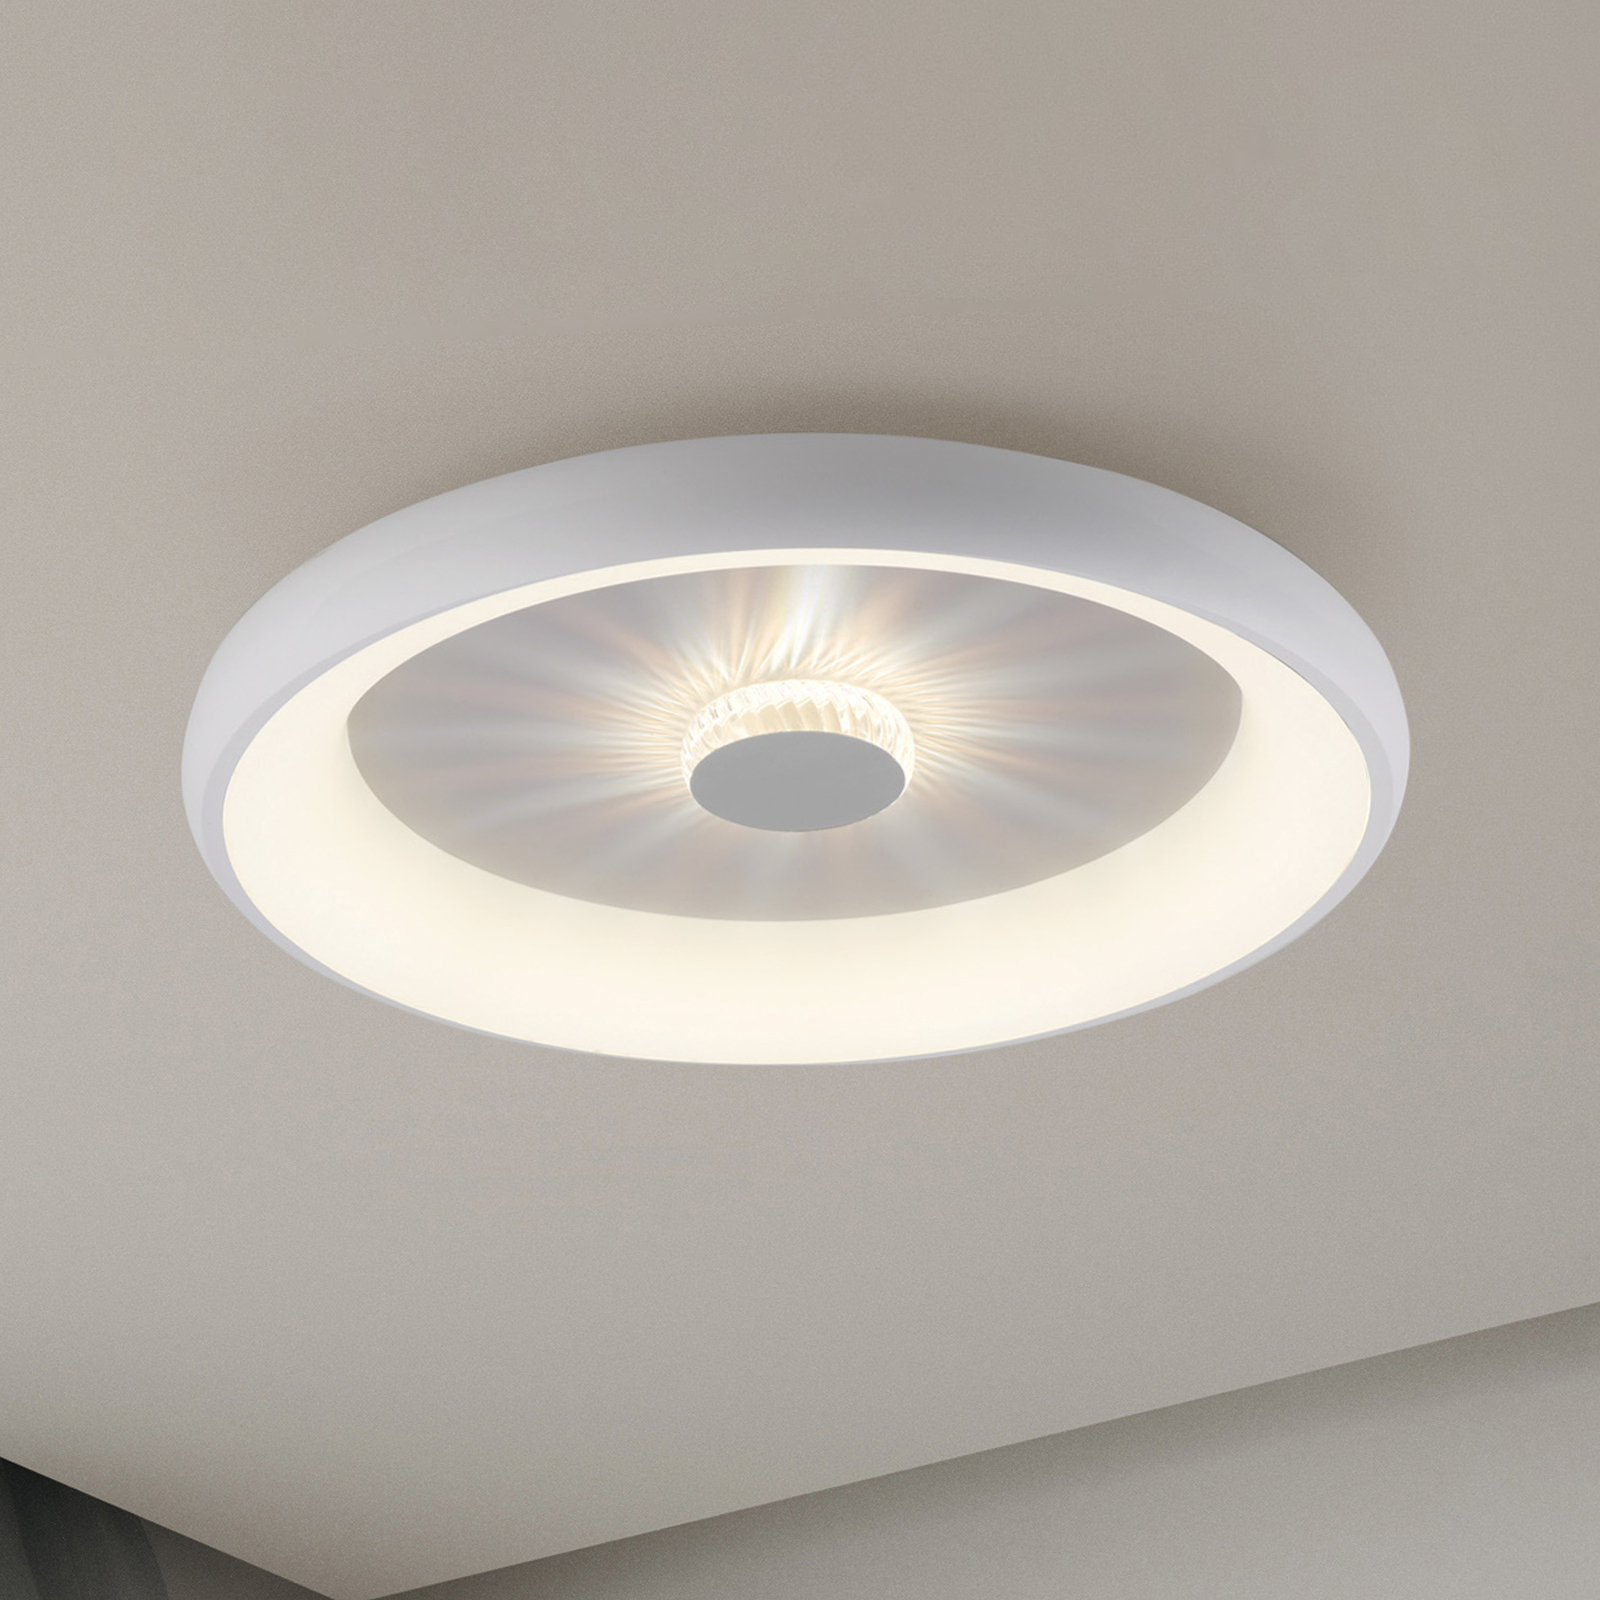 LED-Deckenleuchte Vertigo, CCT, Ø 61,5 cm, weiß